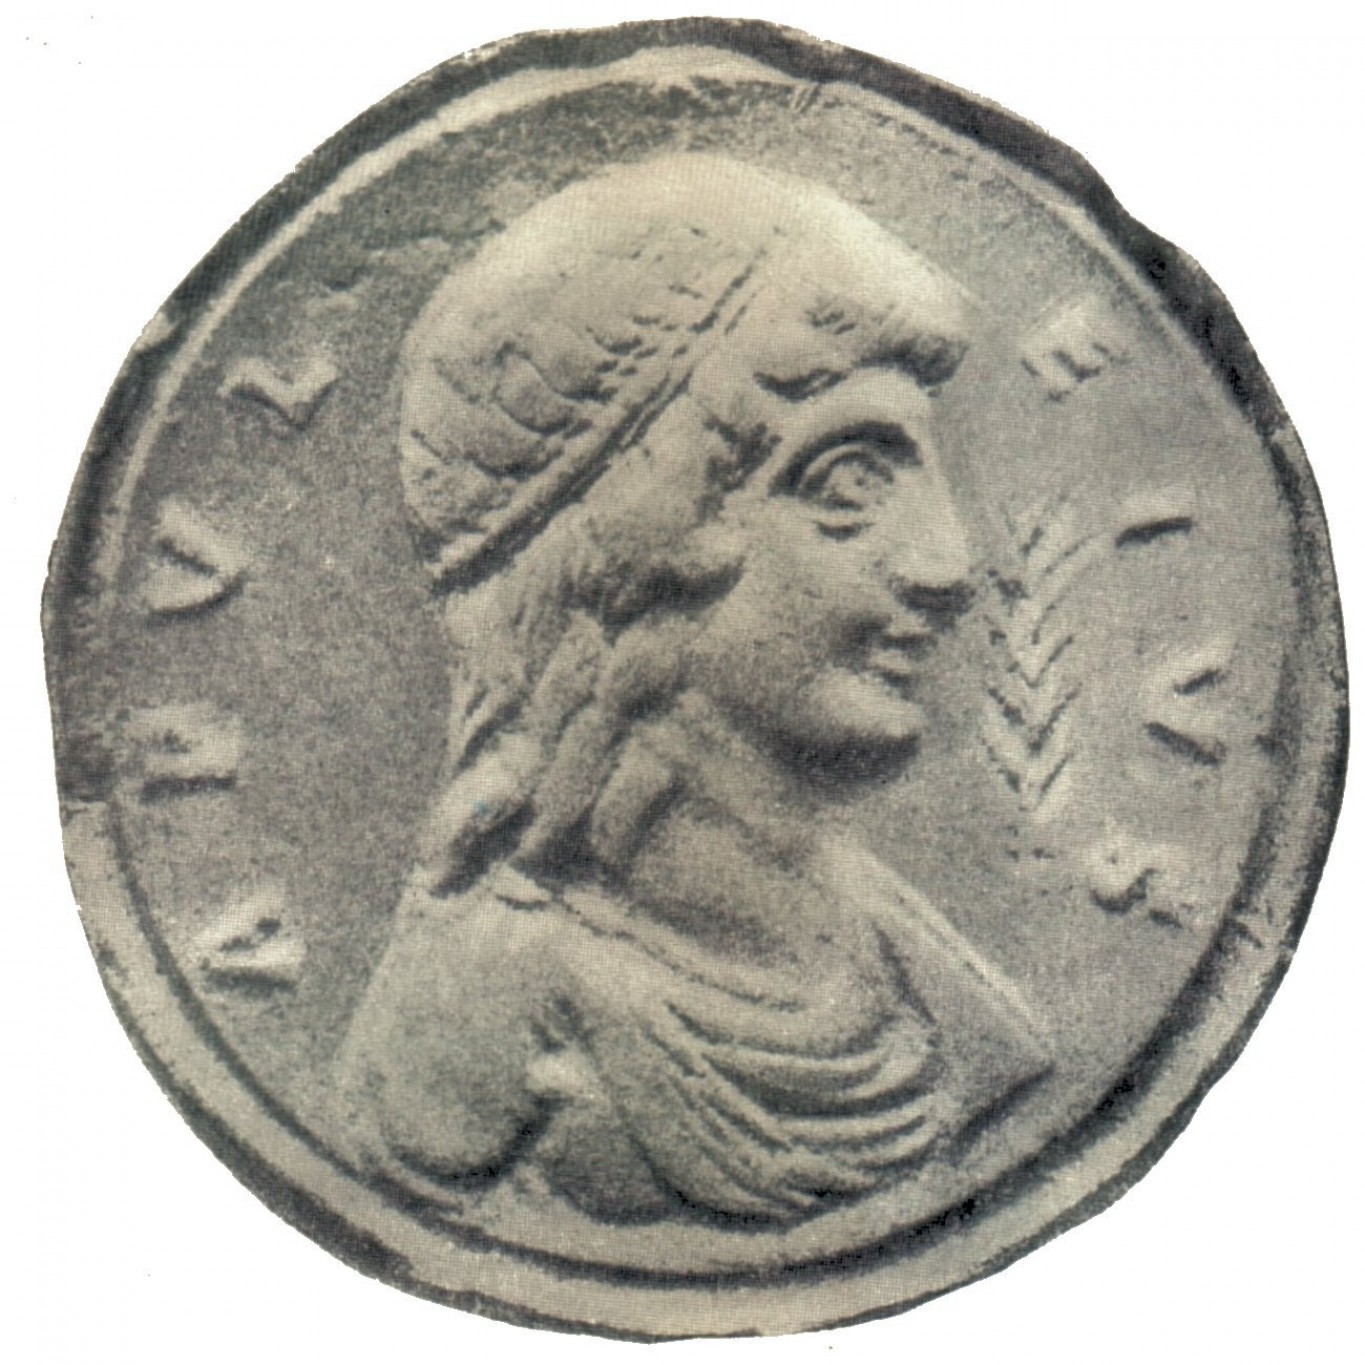 Фортуна, римская богиня удачи